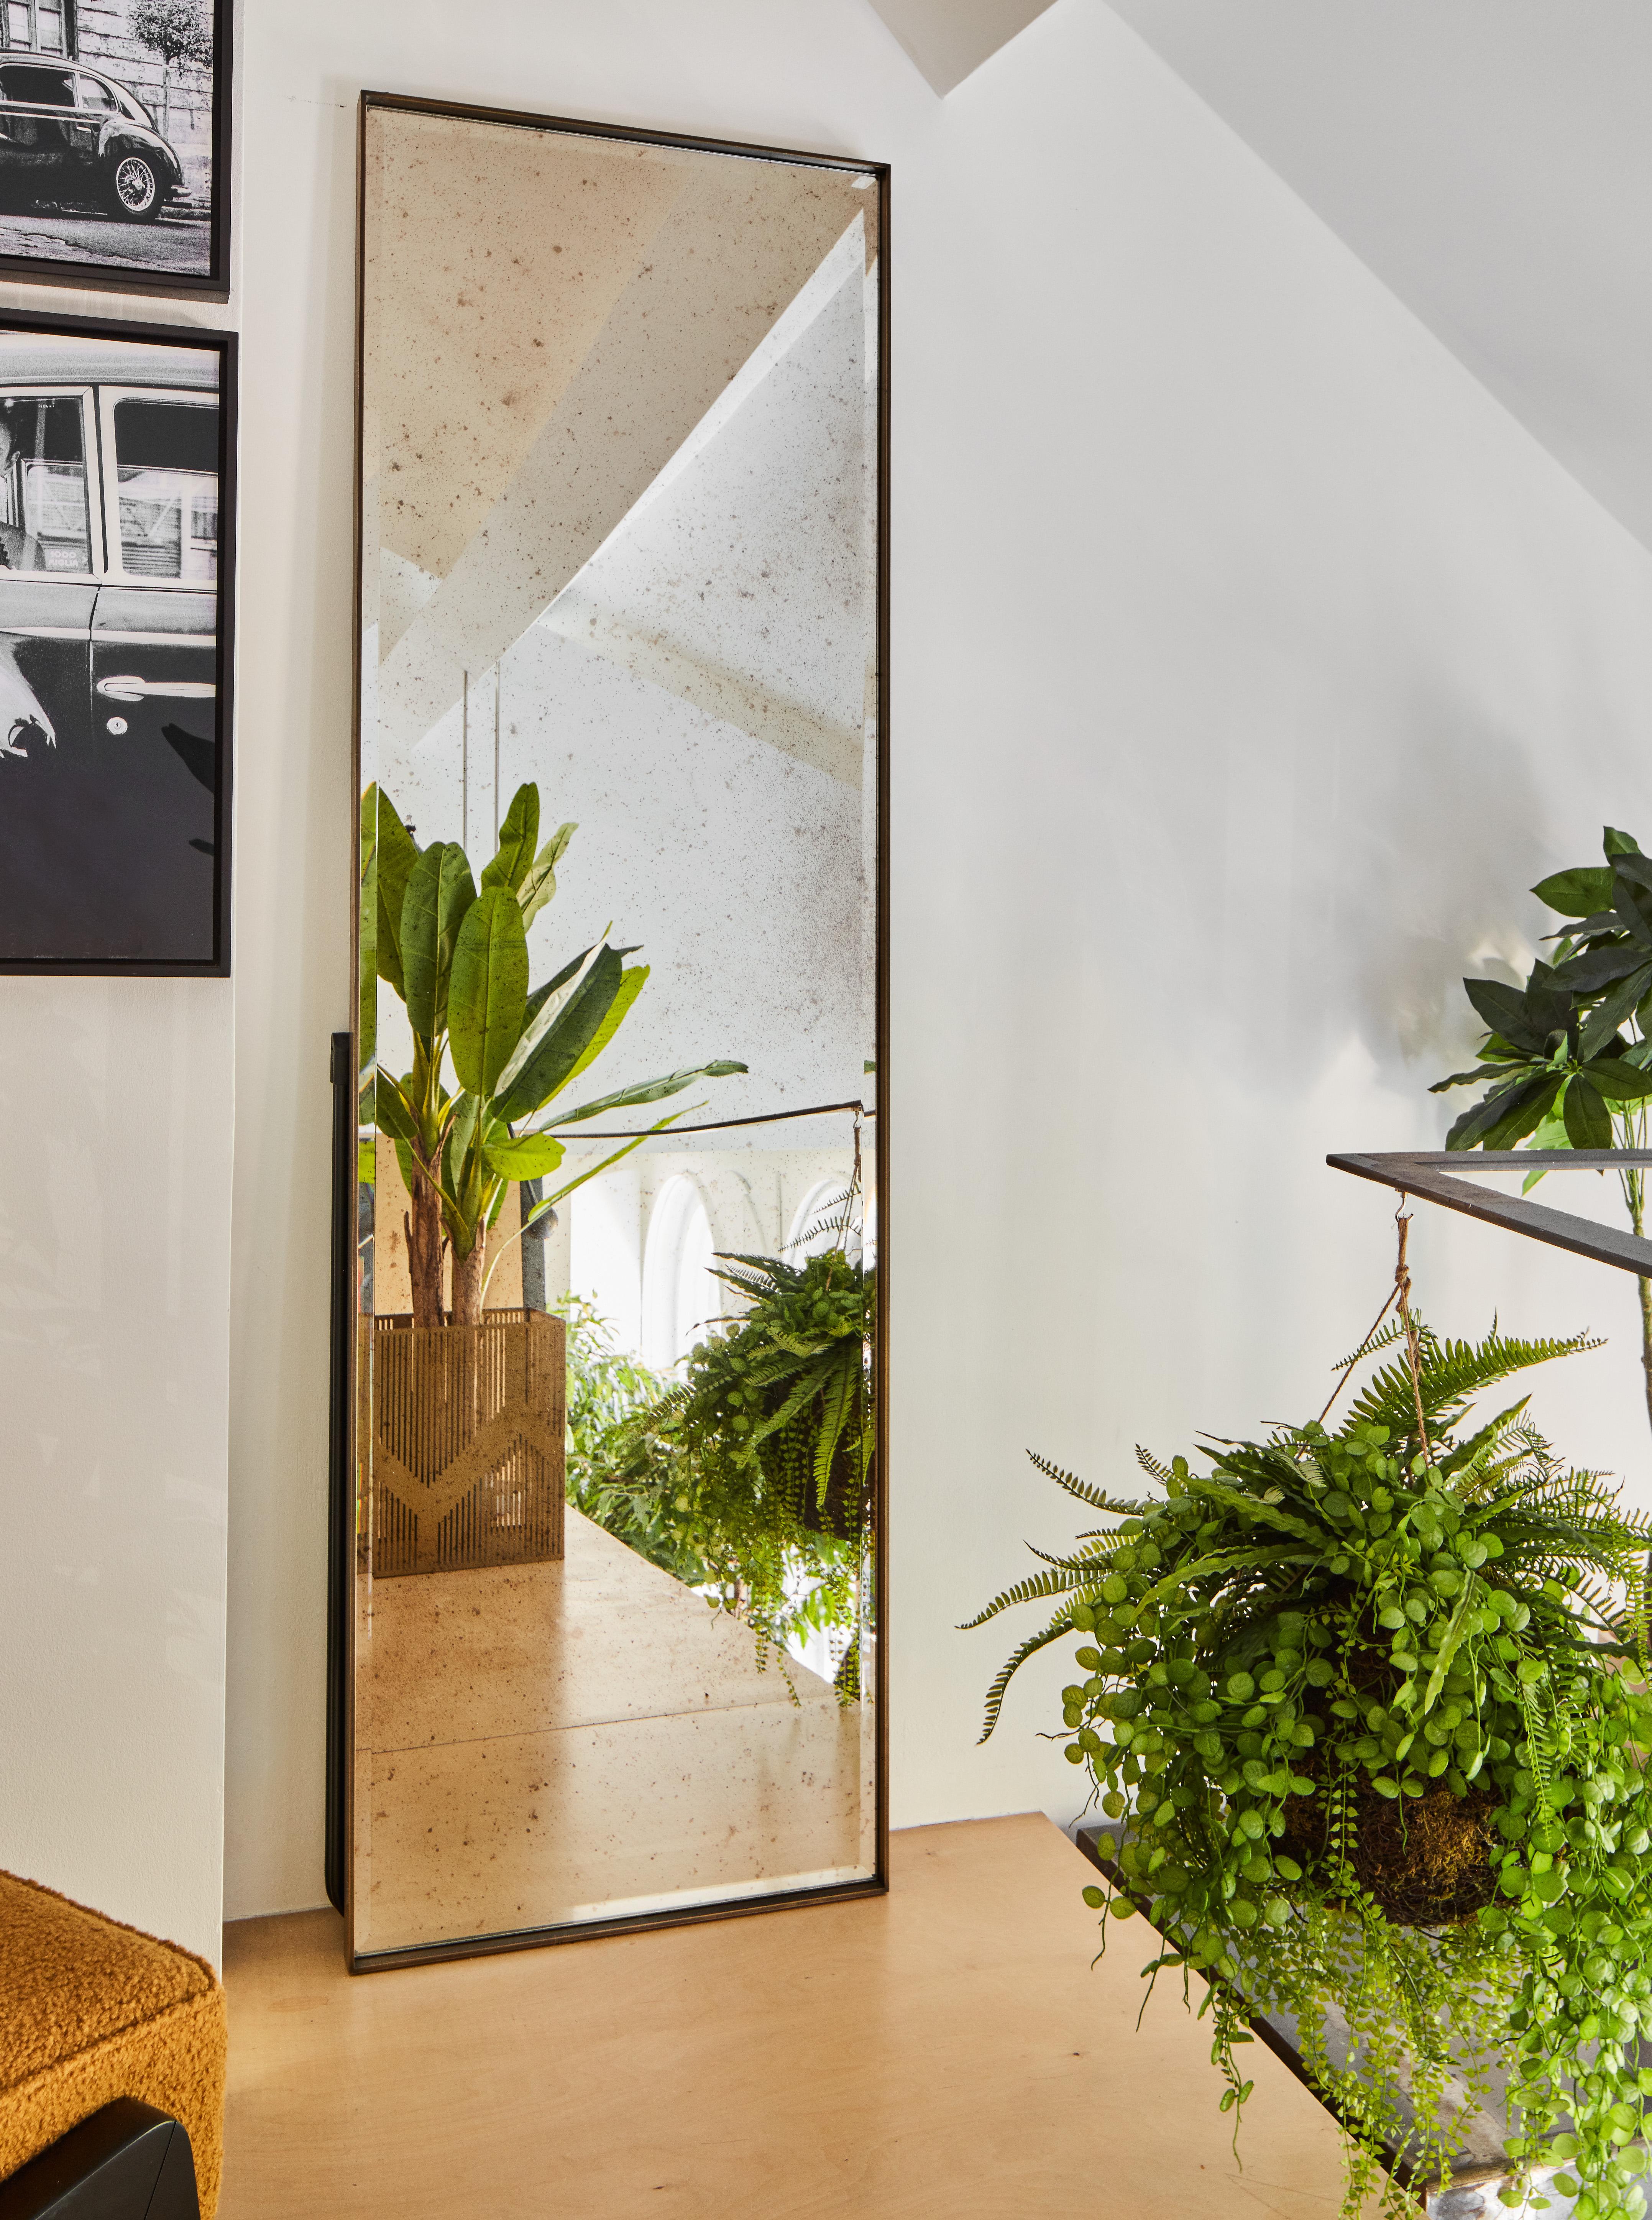 Wir stellen den Slim Mirror von Casa Botelho vor - ein luxuriöses und maskulines Wohnaccessoire, das ein kühnes Statement setzen soll. Mit einer Höhe von 210 cm und einem übertriebenen Rahmen verleiht dieser Spiegel jedem Raum einen Hauch von